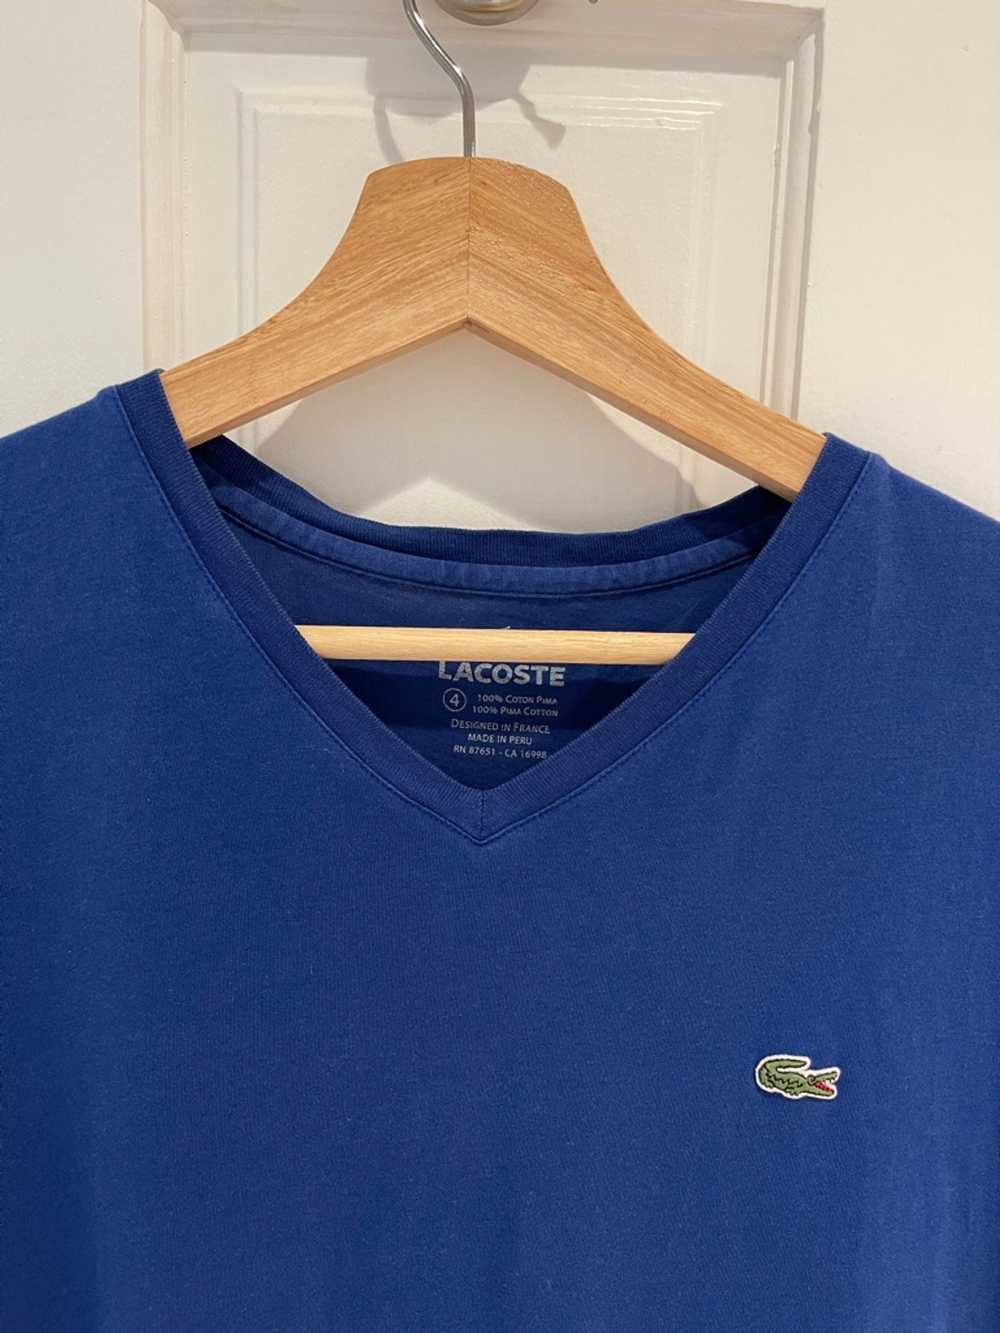 Lacoste Lacoste Pima Cotton Blue T Shirt - image 4